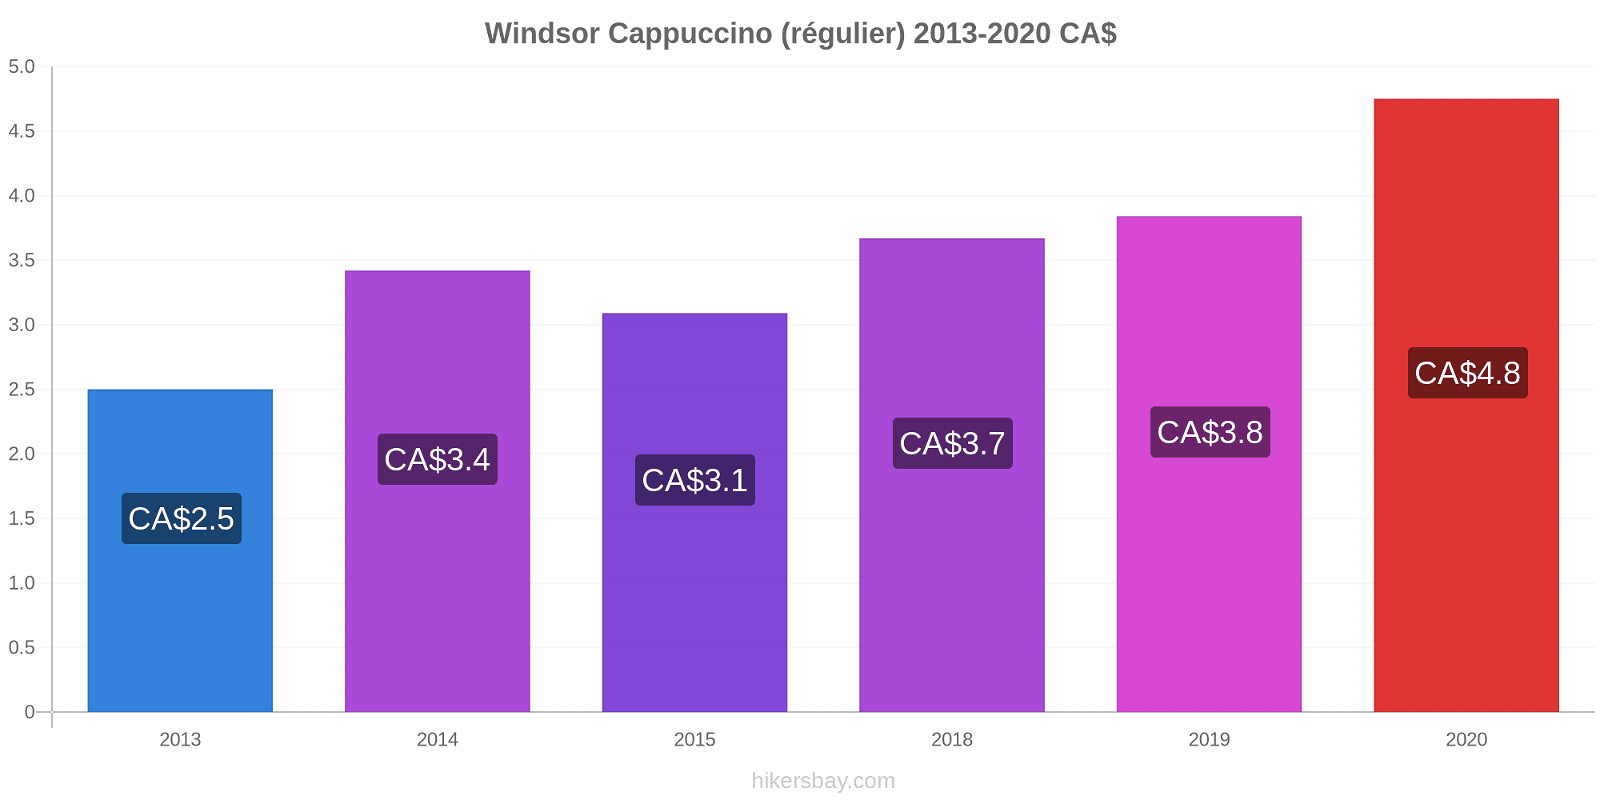 Windsor changements de prix Cappuccino (régulier) hikersbay.com